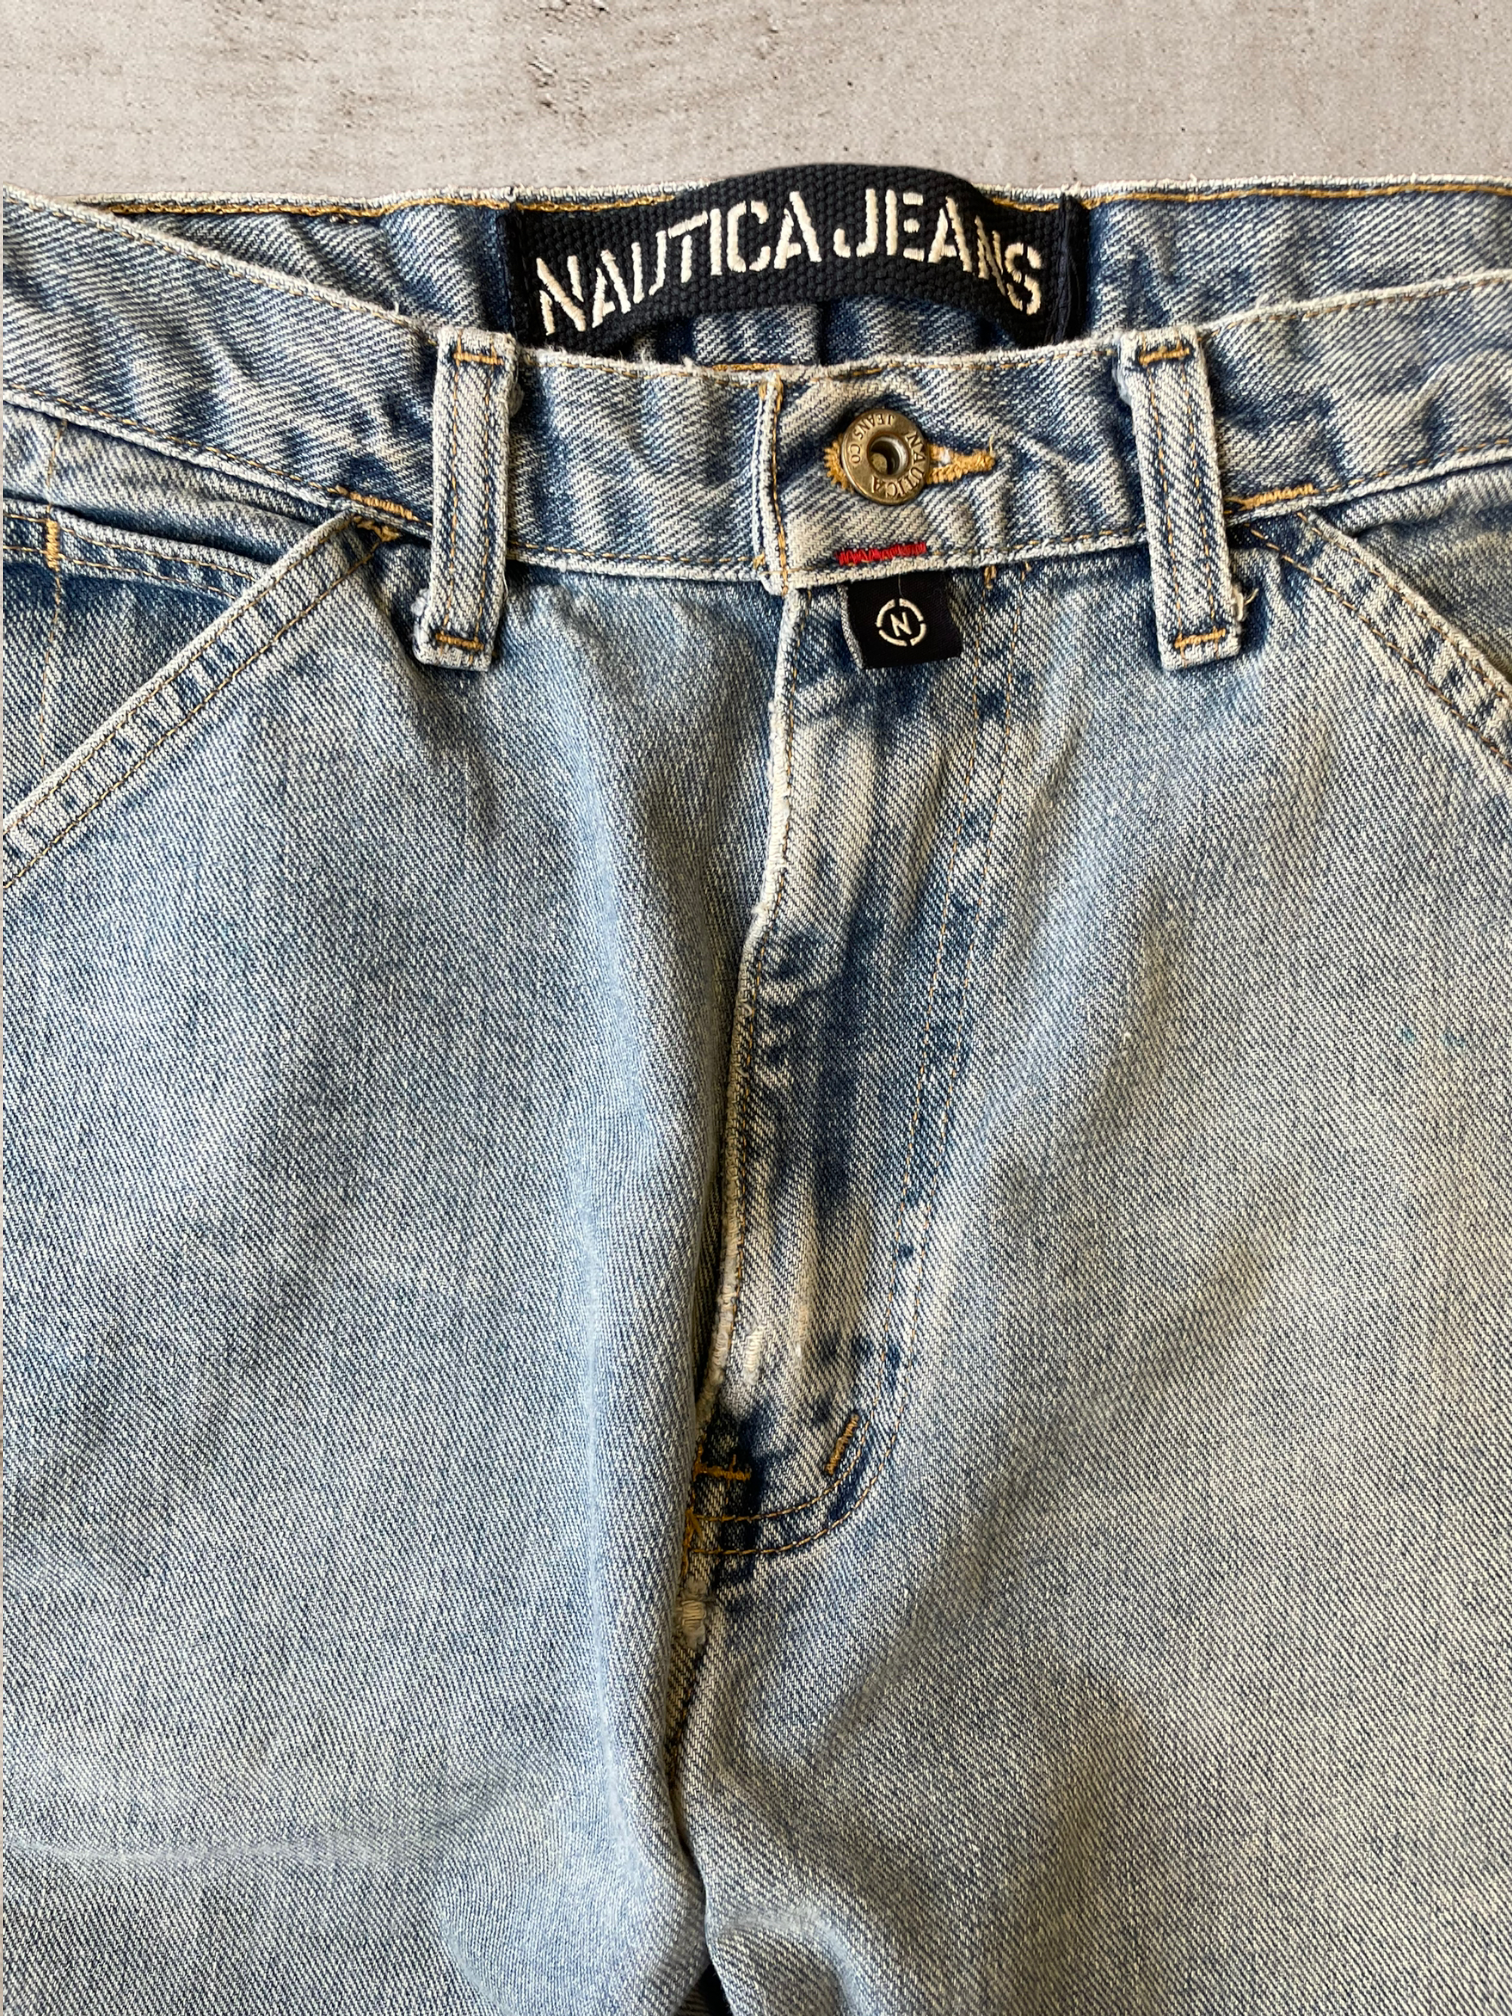 90s Nautica Carpenter Jeans - 34x32